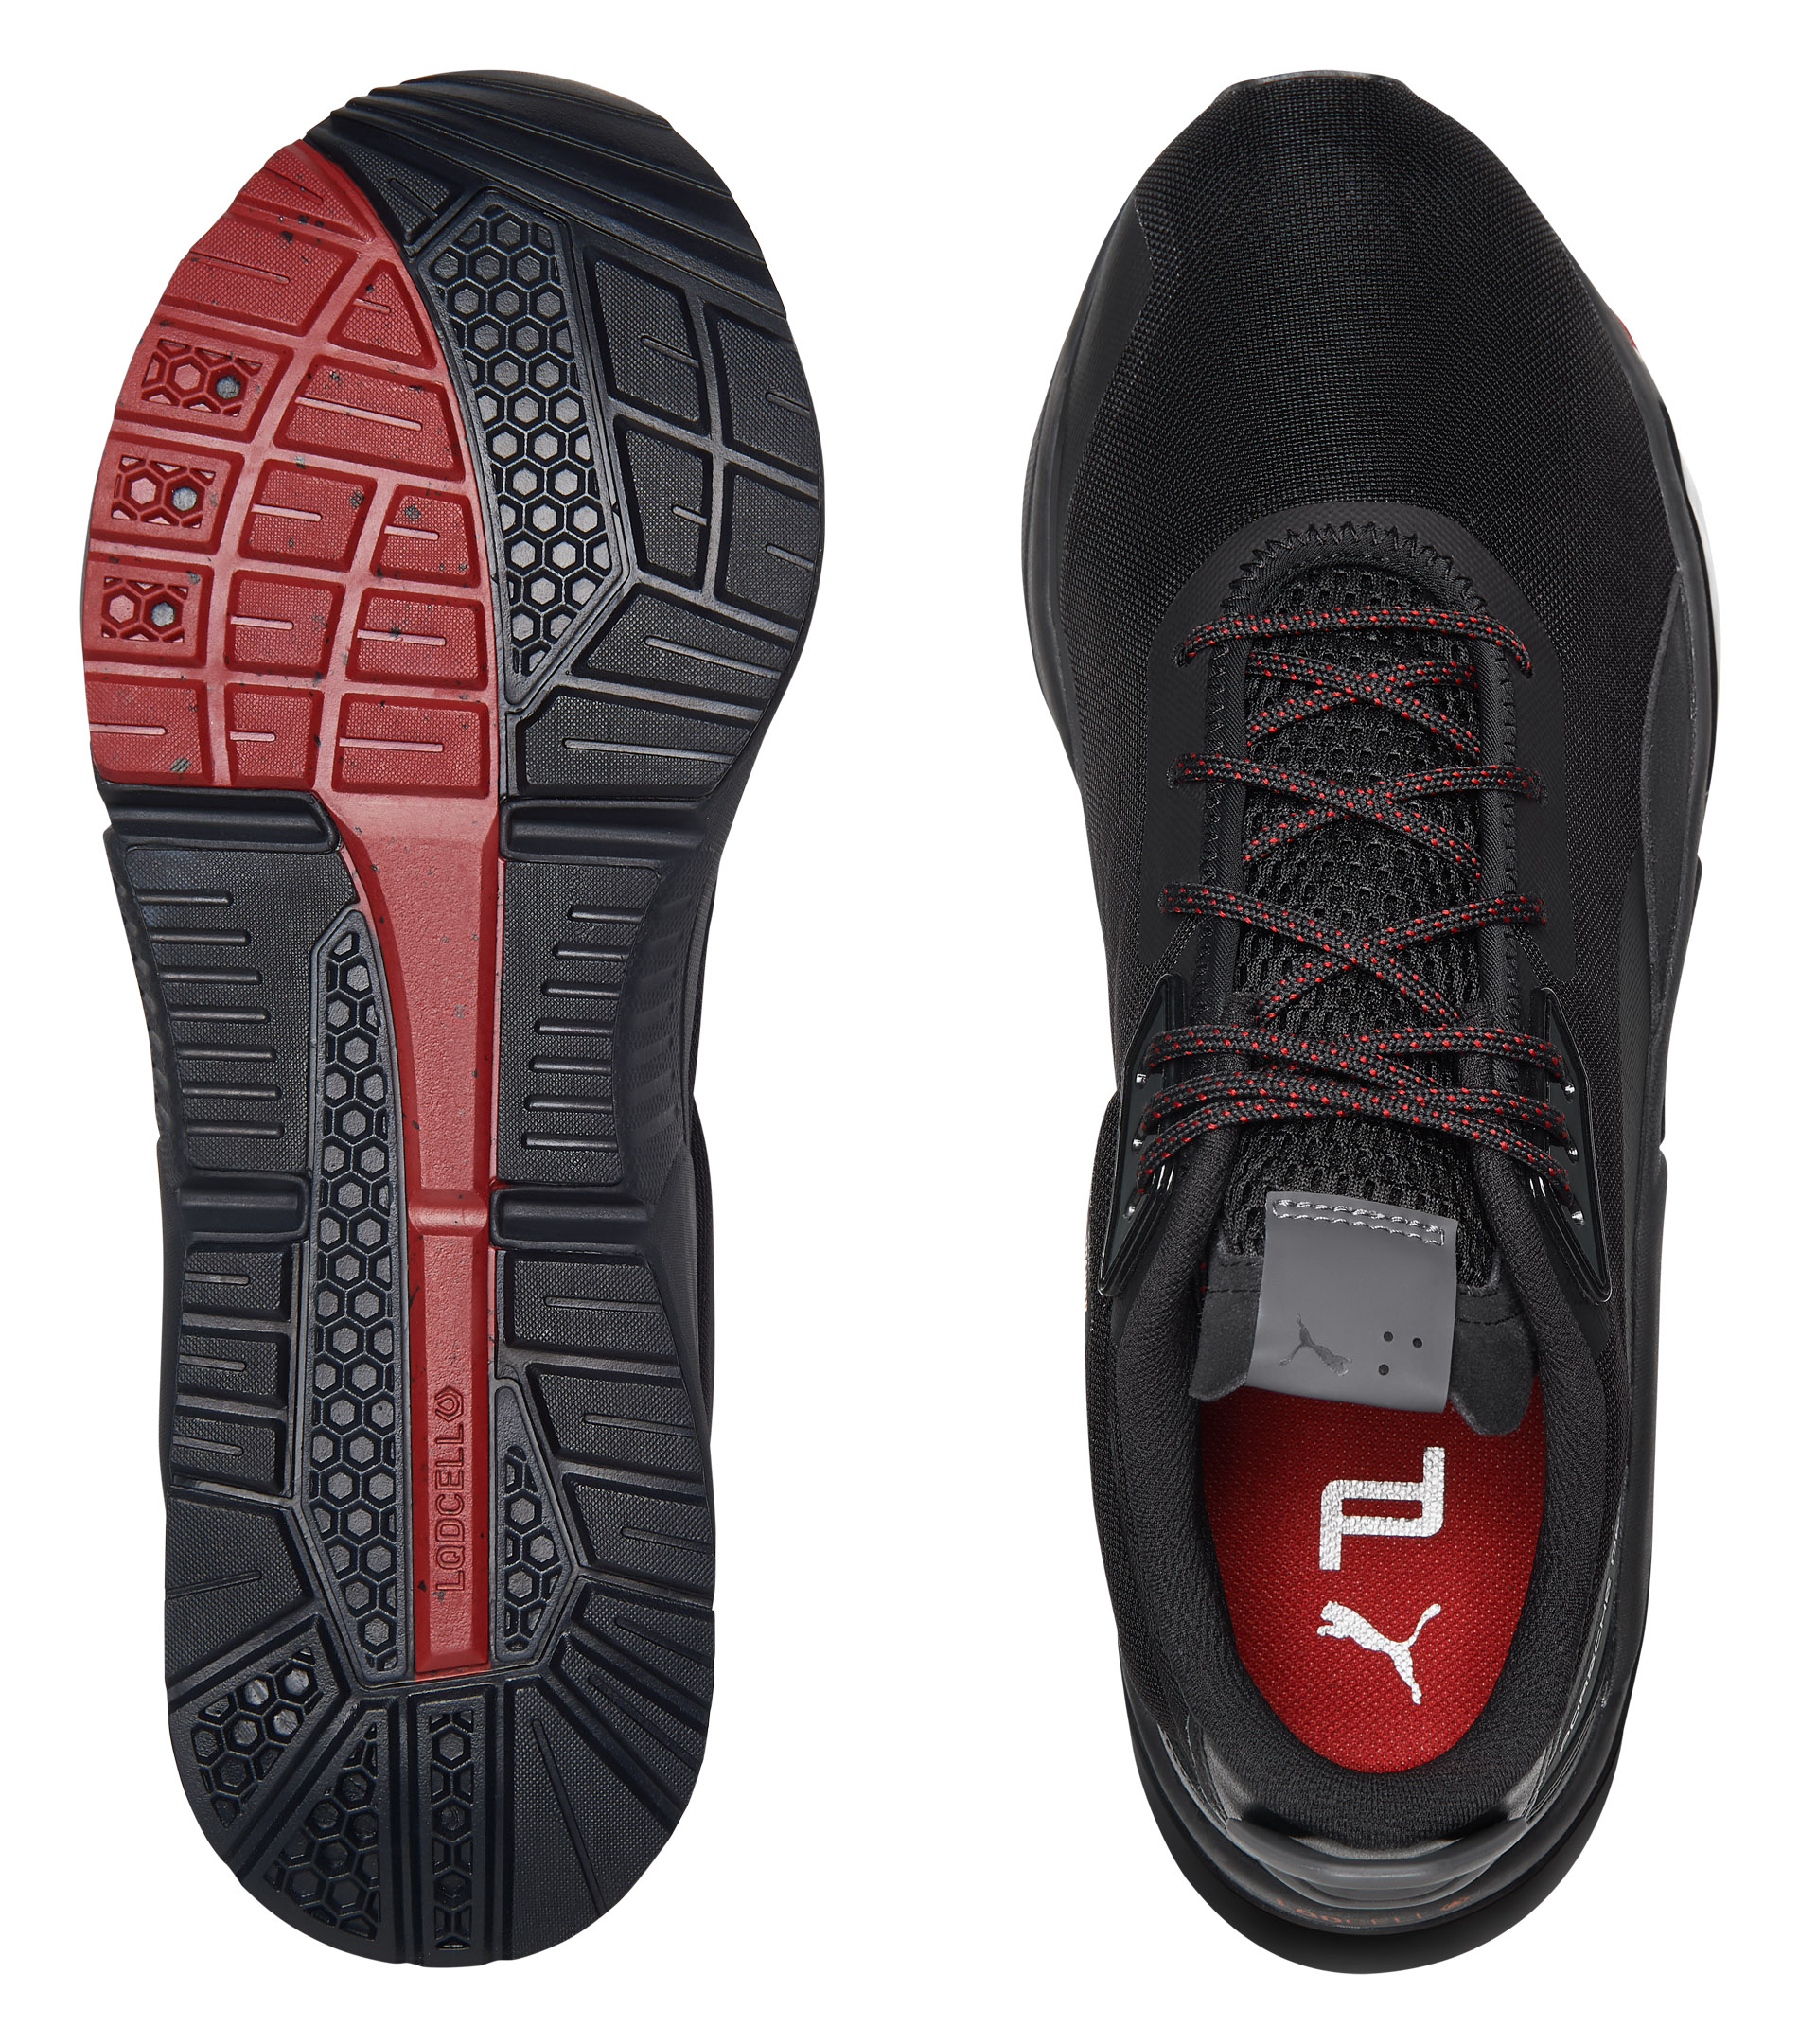 LQD Cell Trainer Sports Shoes - Sports Shoes | Porsche Design